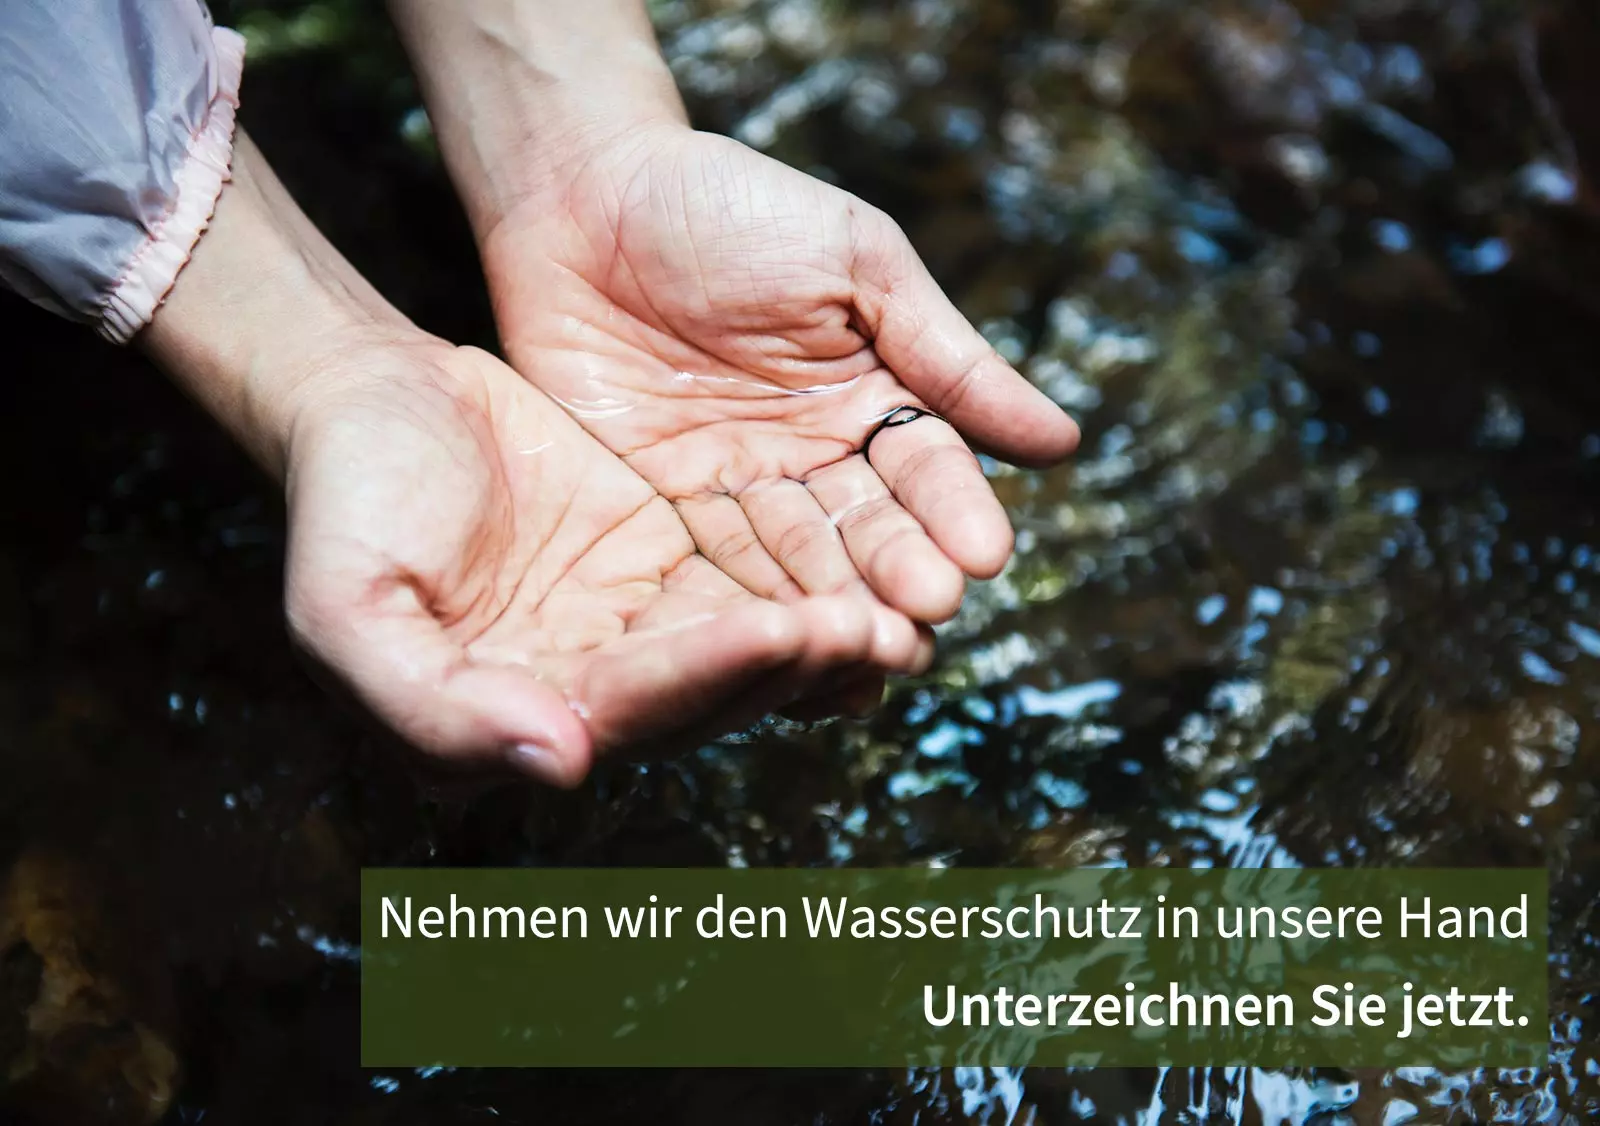 Nehmen wir den Schutz des Wassers in unsere Hand - Bild wasserschöpfender Hände an einem Fluß